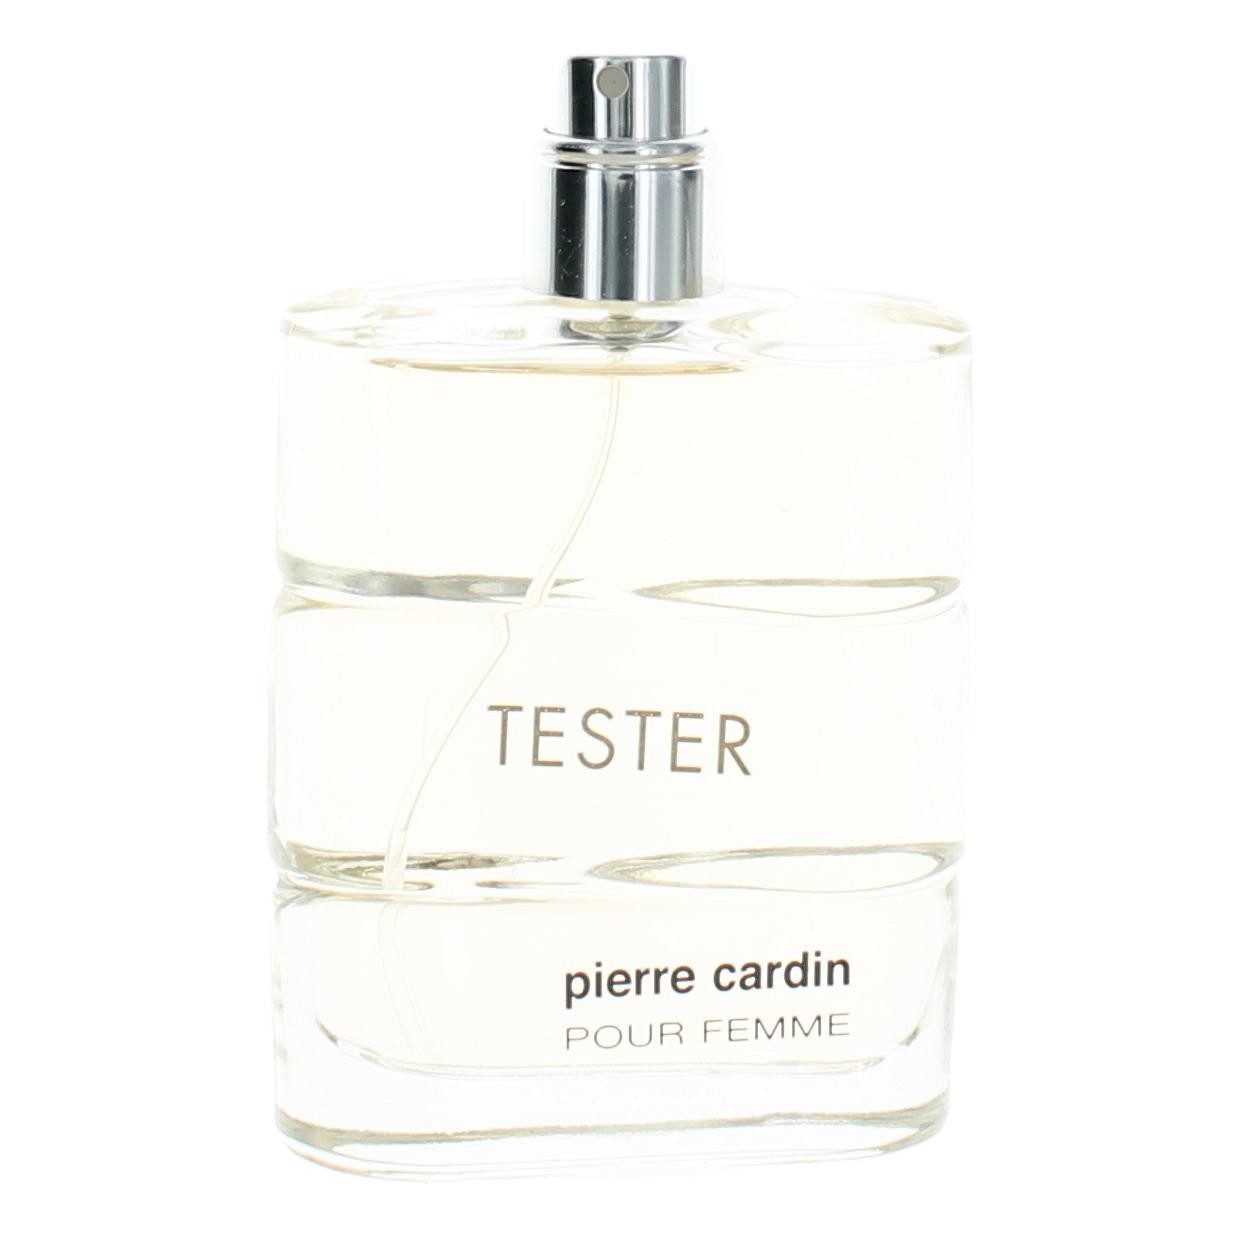 Pierre Cardin Pour Femme by Pierre Cardin 1.7 oz Eau De Parfum Spray for Women Tester